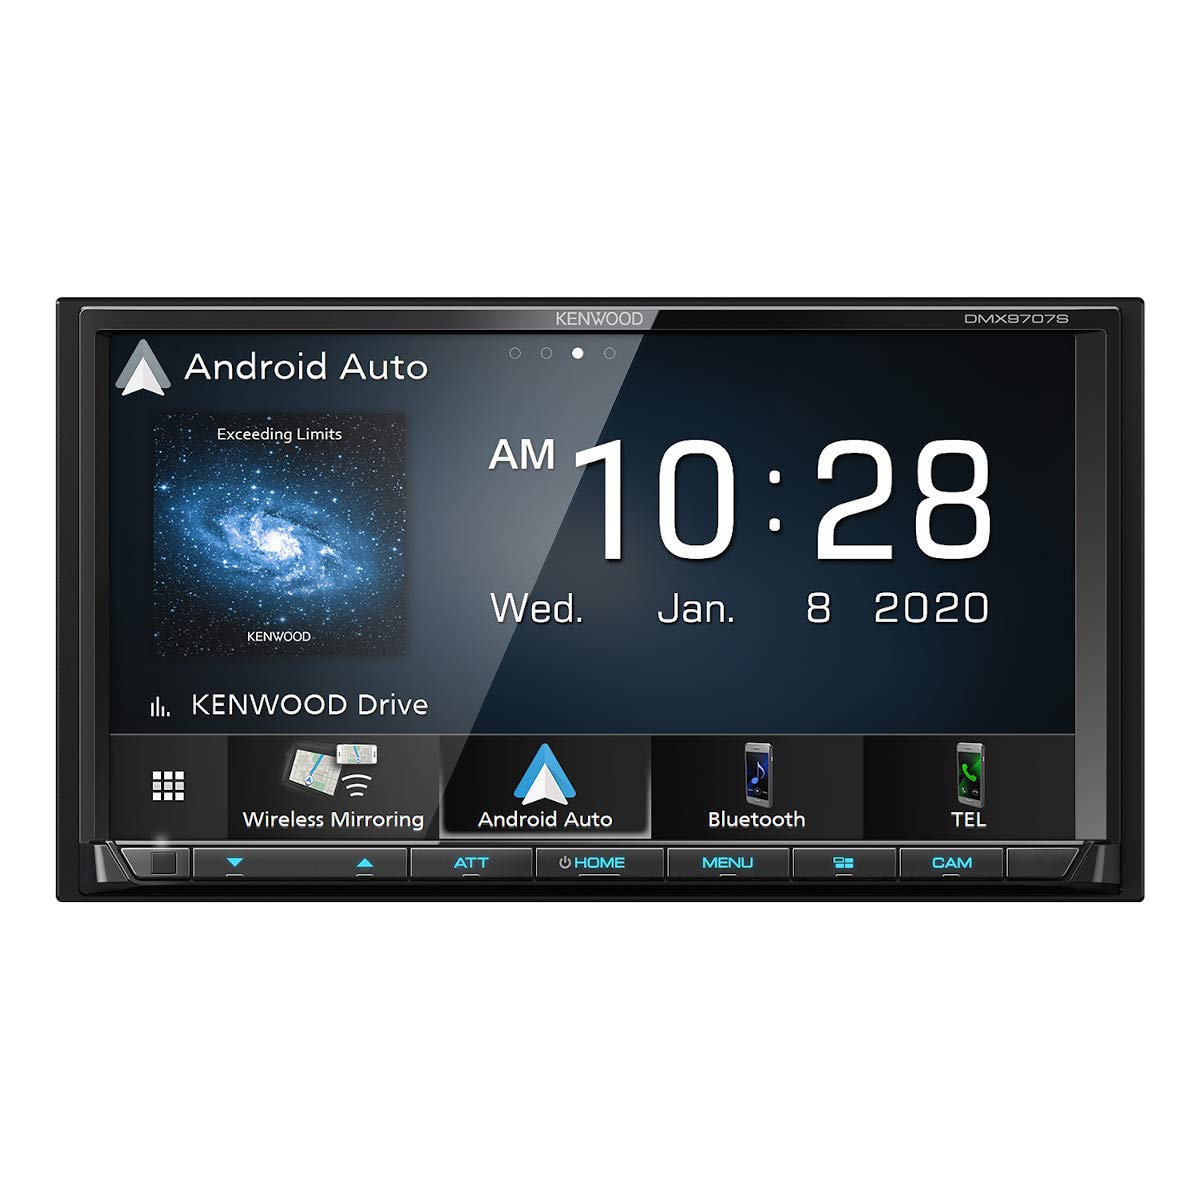  KENWOOD DMX9707S 6.95 インチ静電容量式タッチ スクリーン、カー ステレオ、有線およびワイヤレス CarPlay および Android Auto、Bluetooth、AM/FM ラジオ、MP3 プ...